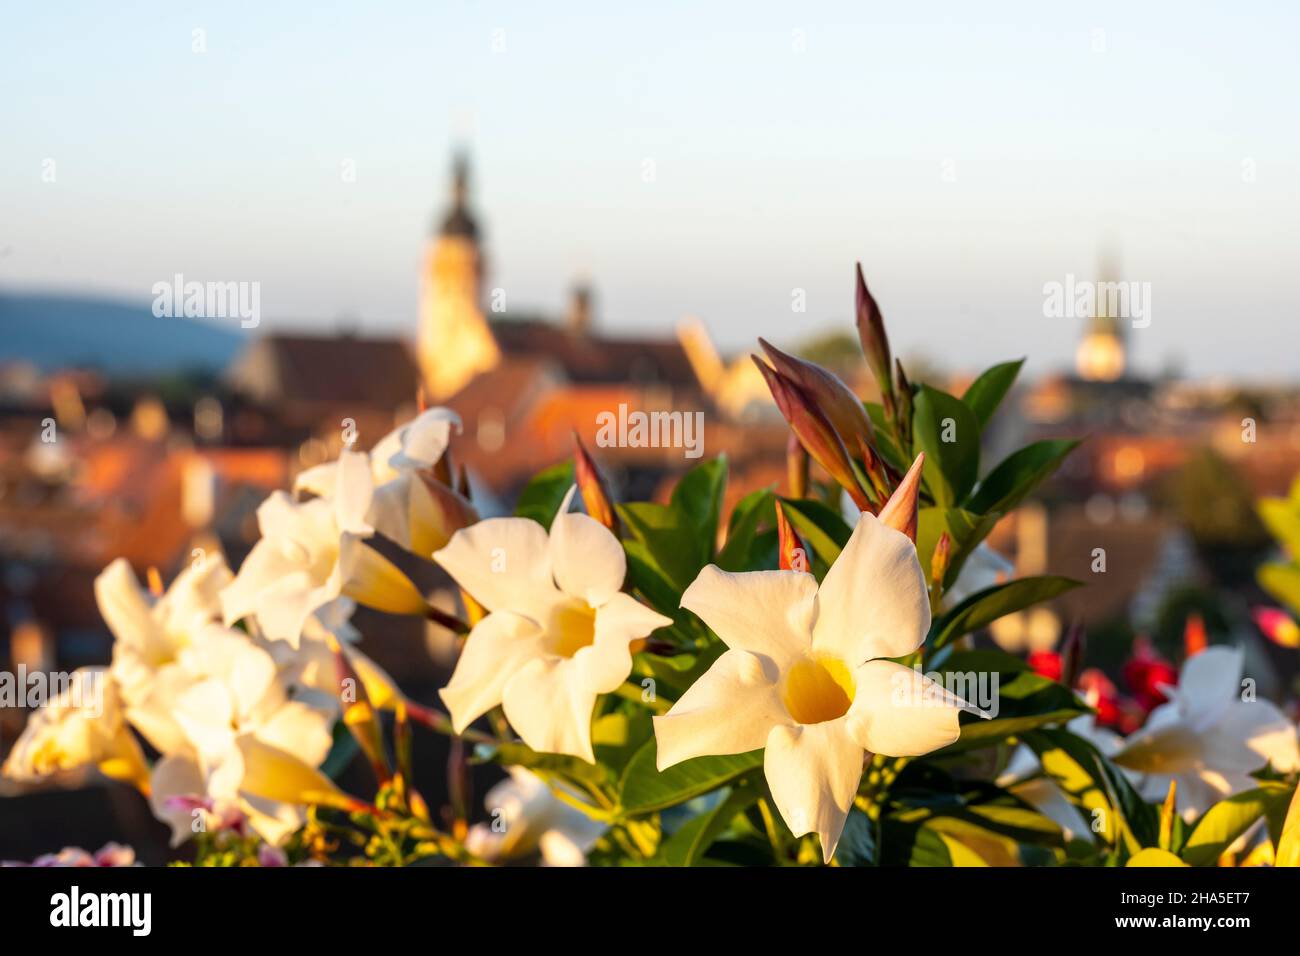 dipladenia, en una caja de flores frente al horizonte de la ciudad de durlach. Foto de stock